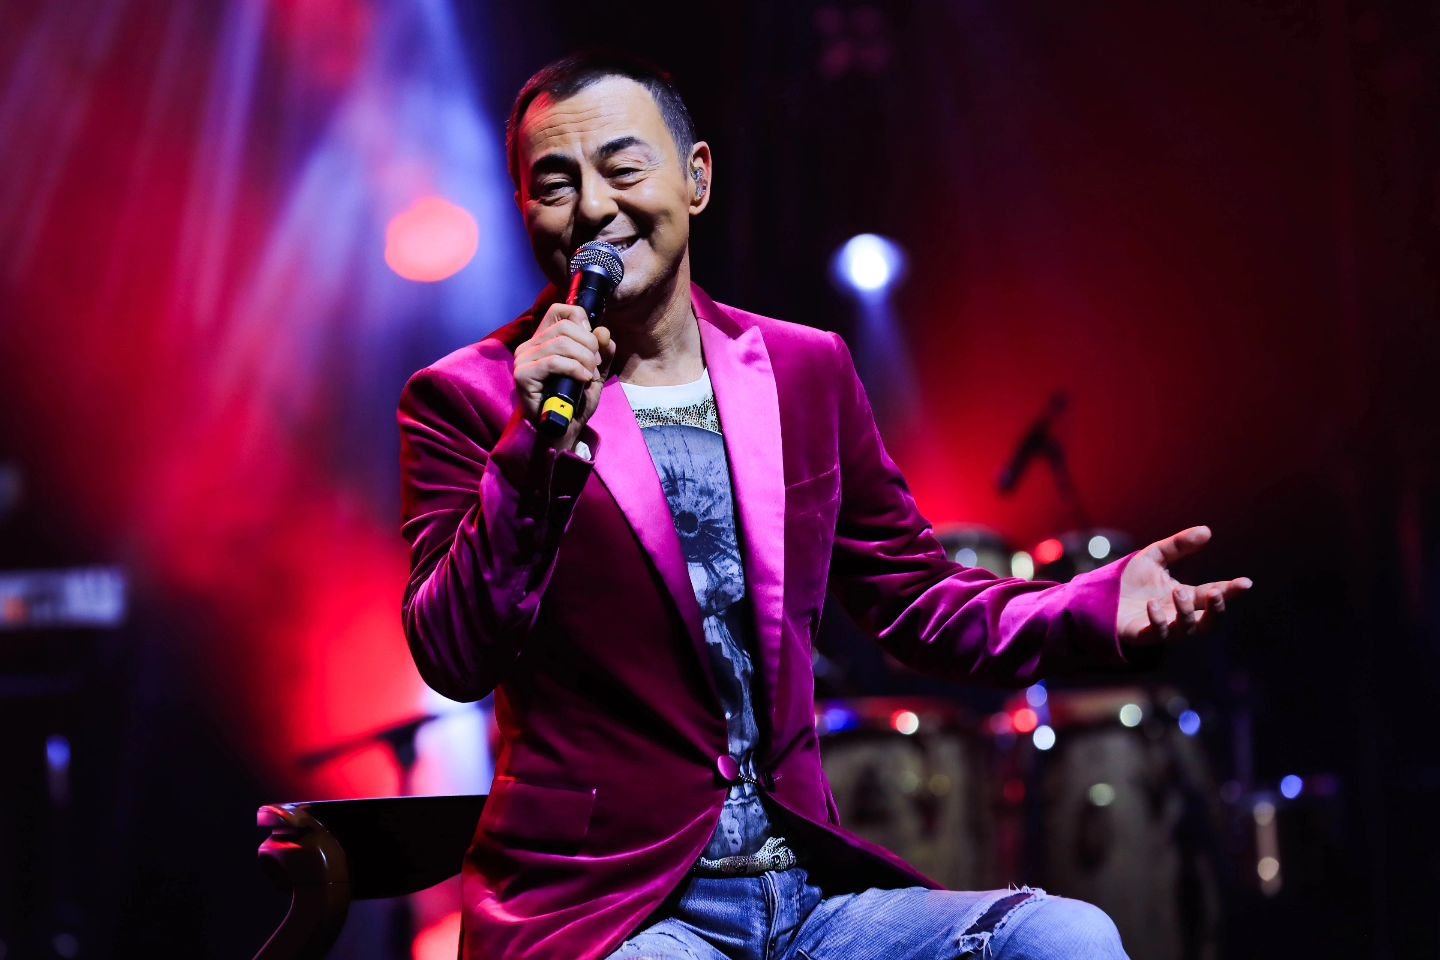 В Баку состоялся концерт звезды турецкой эстрады Сердара Ортача (ФОТО)